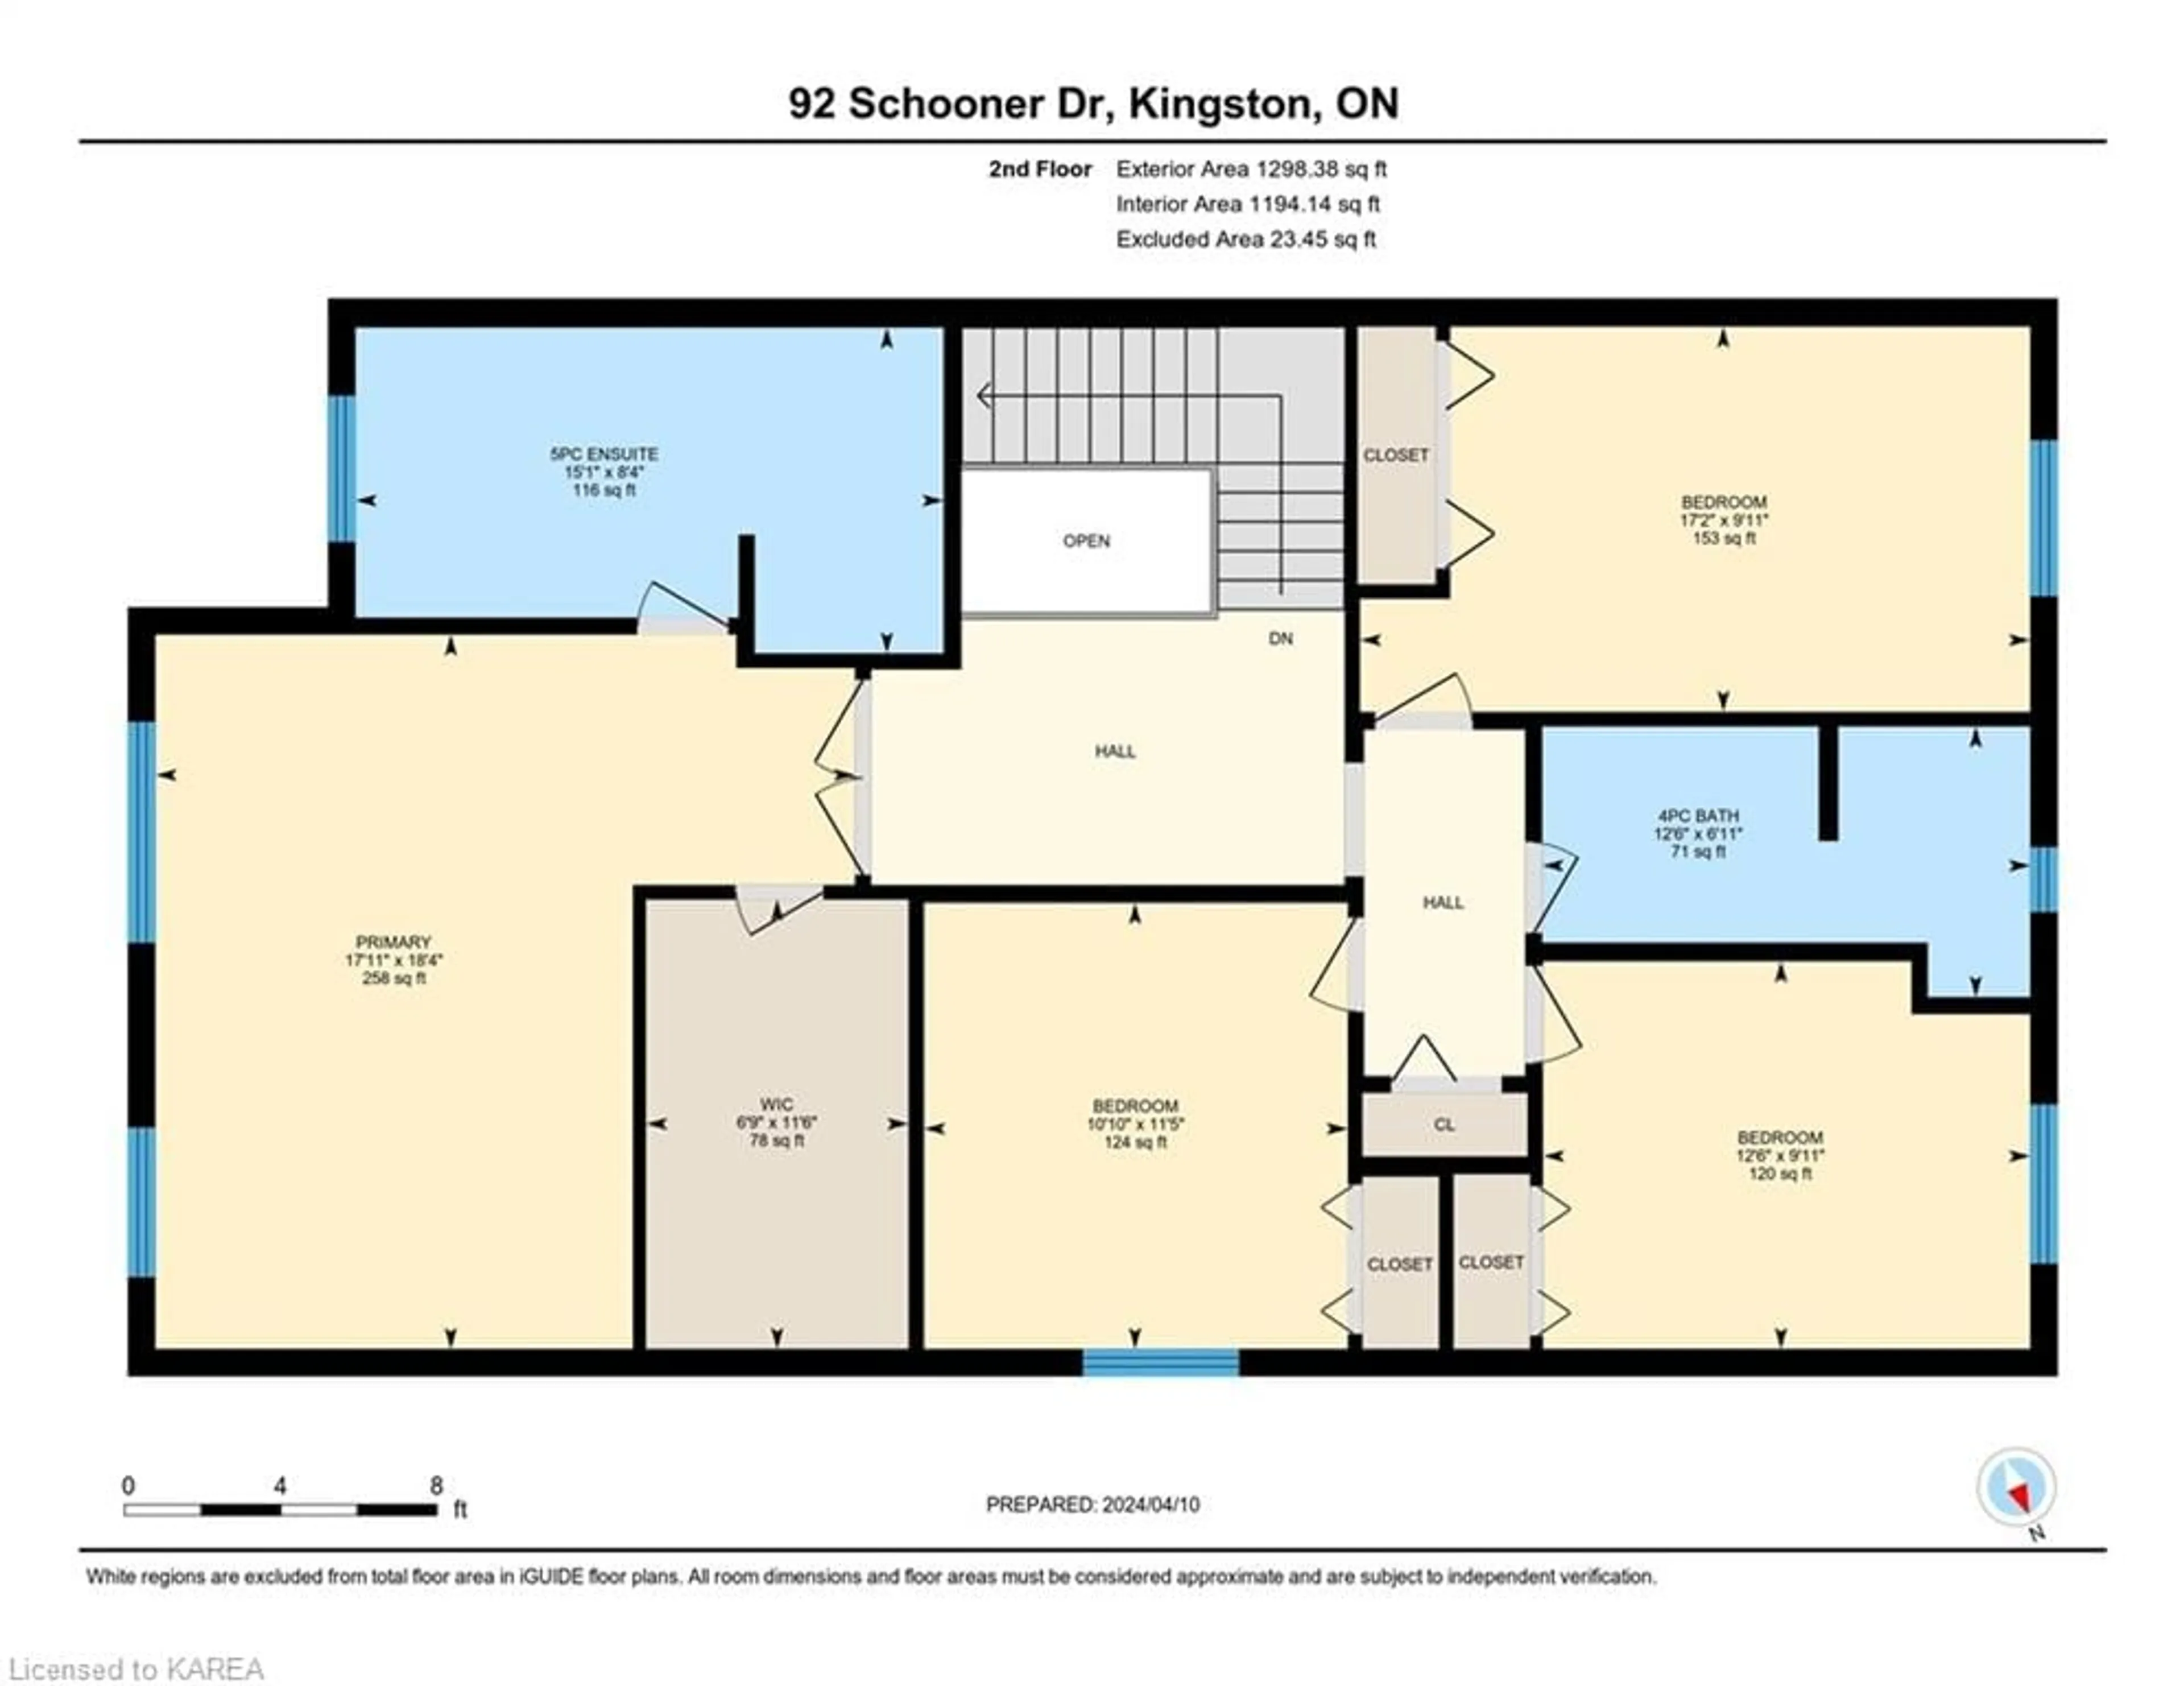 Floor plan for 92 Schooner Dr, Kingston Ontario K7K 0E8